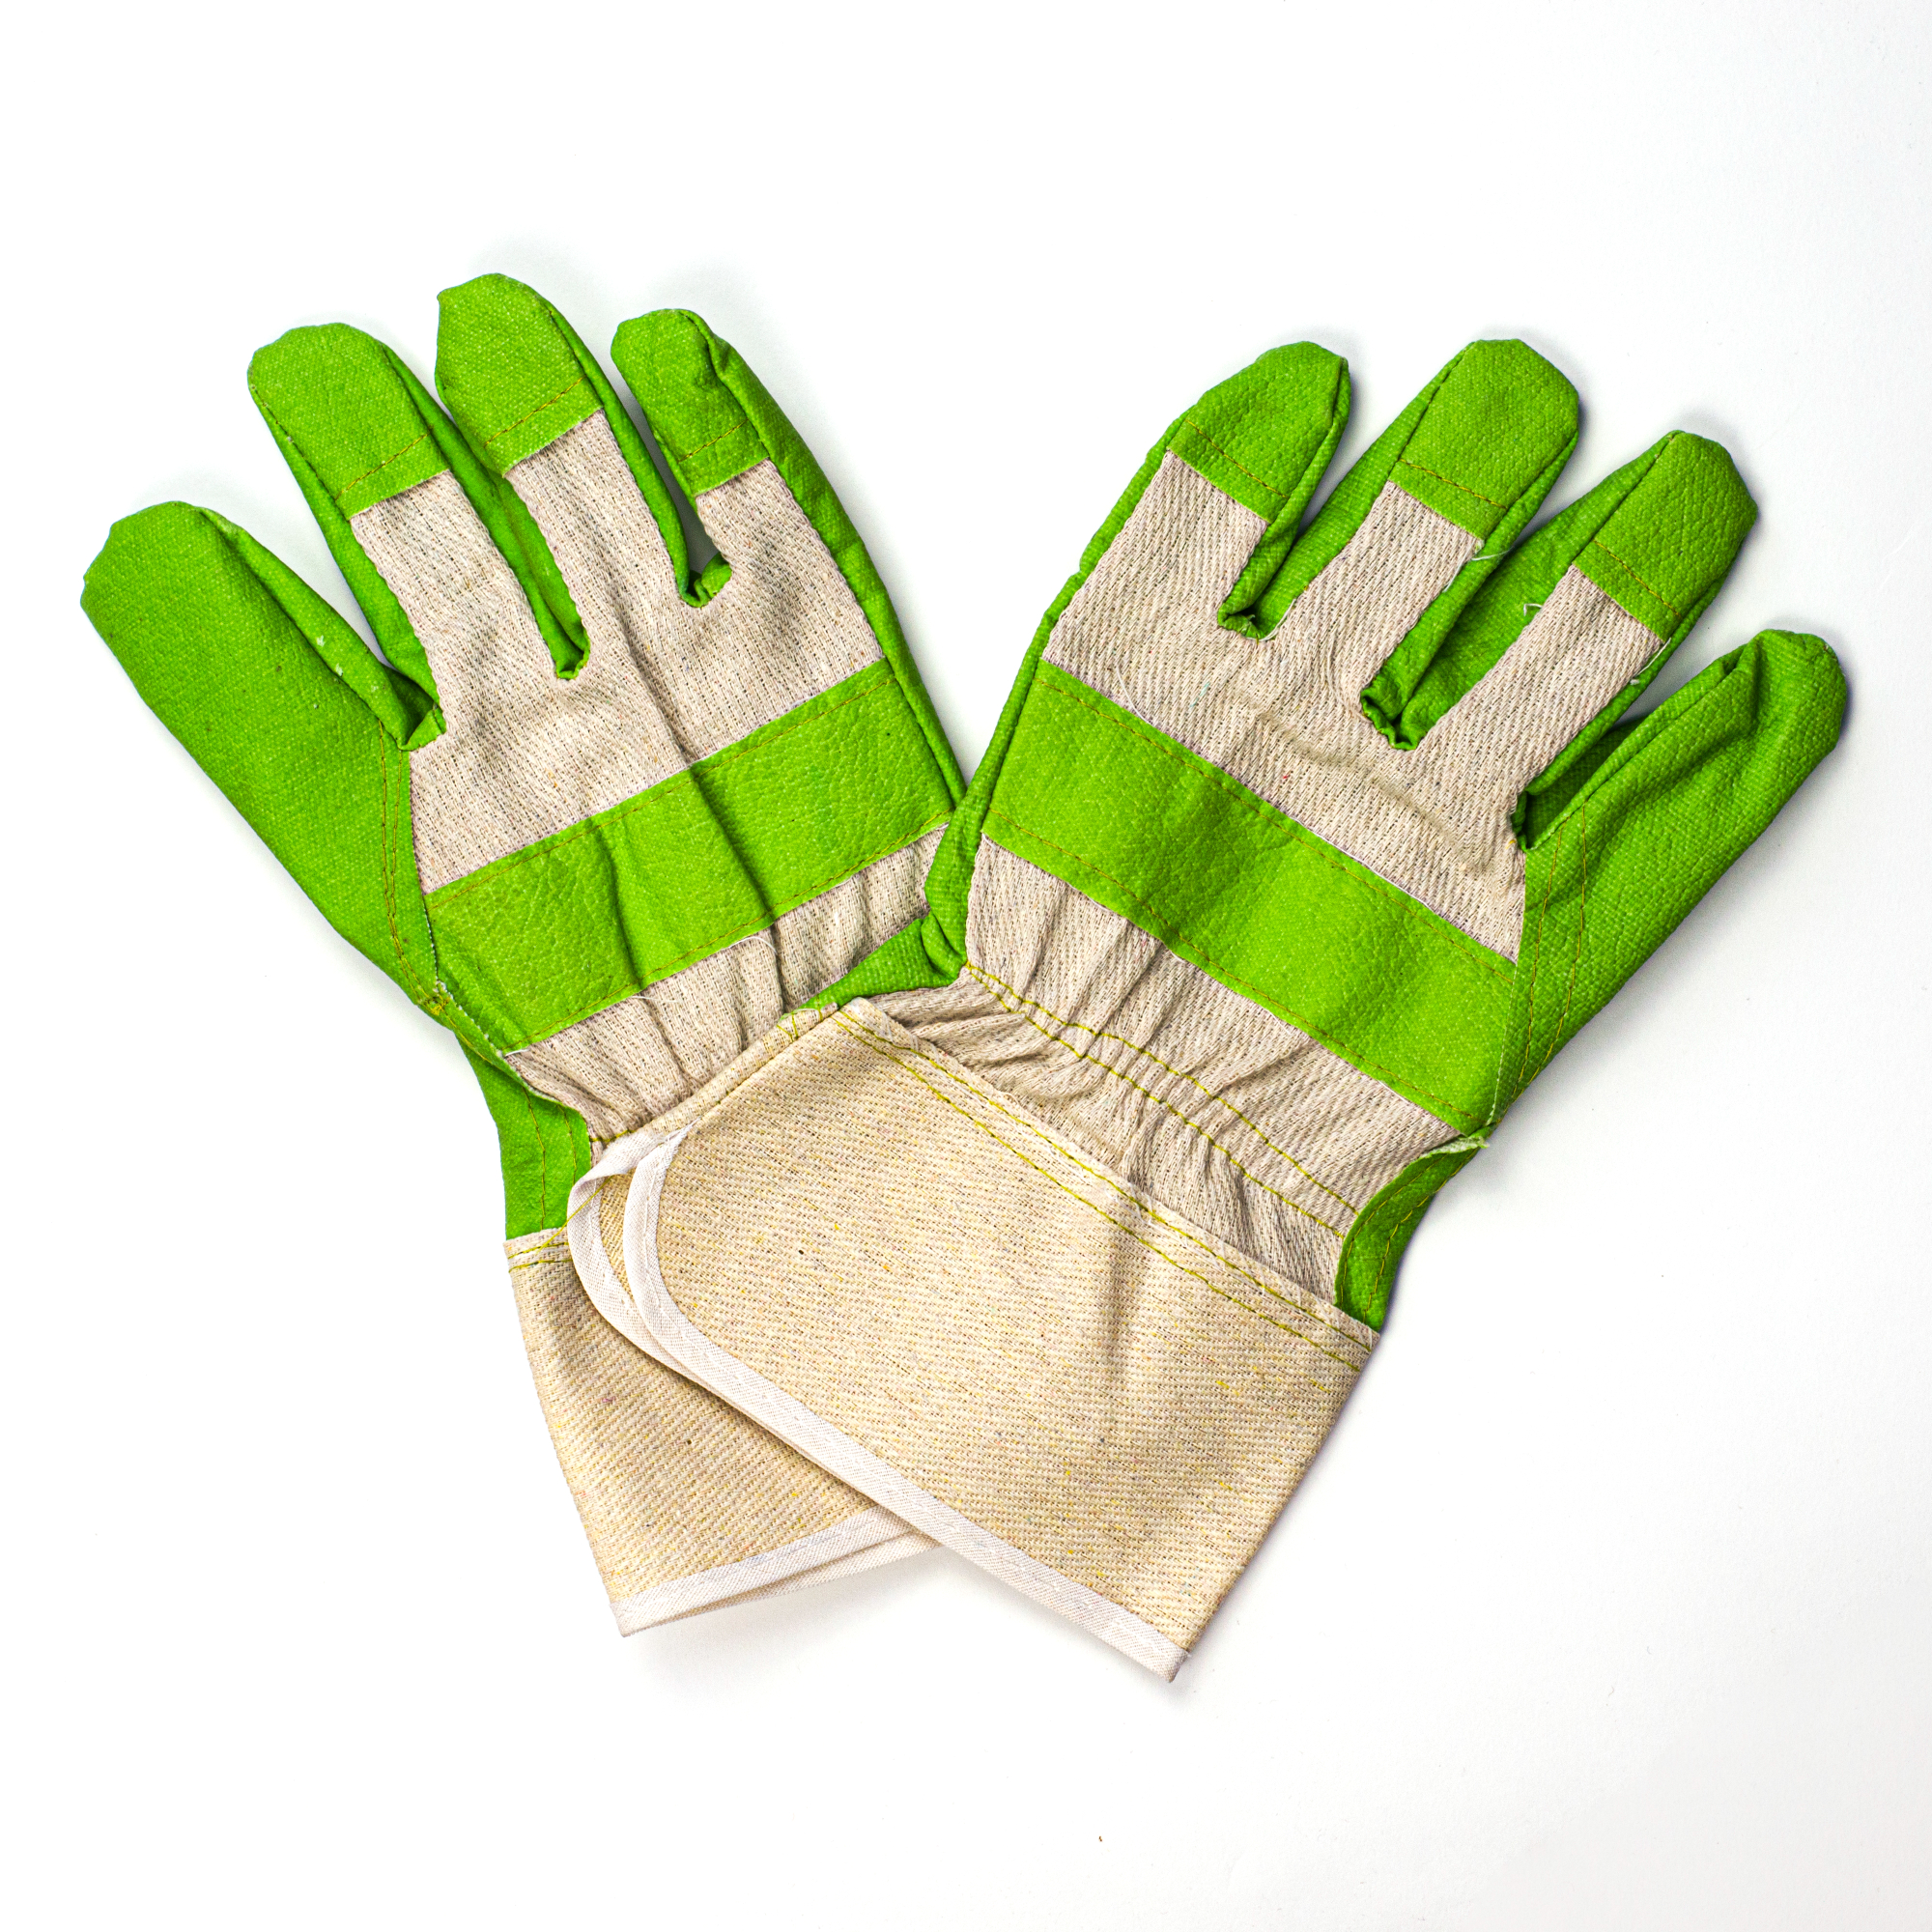 Zaščitne rokavice so bistvene za zagotavljanje varnosti pri delu